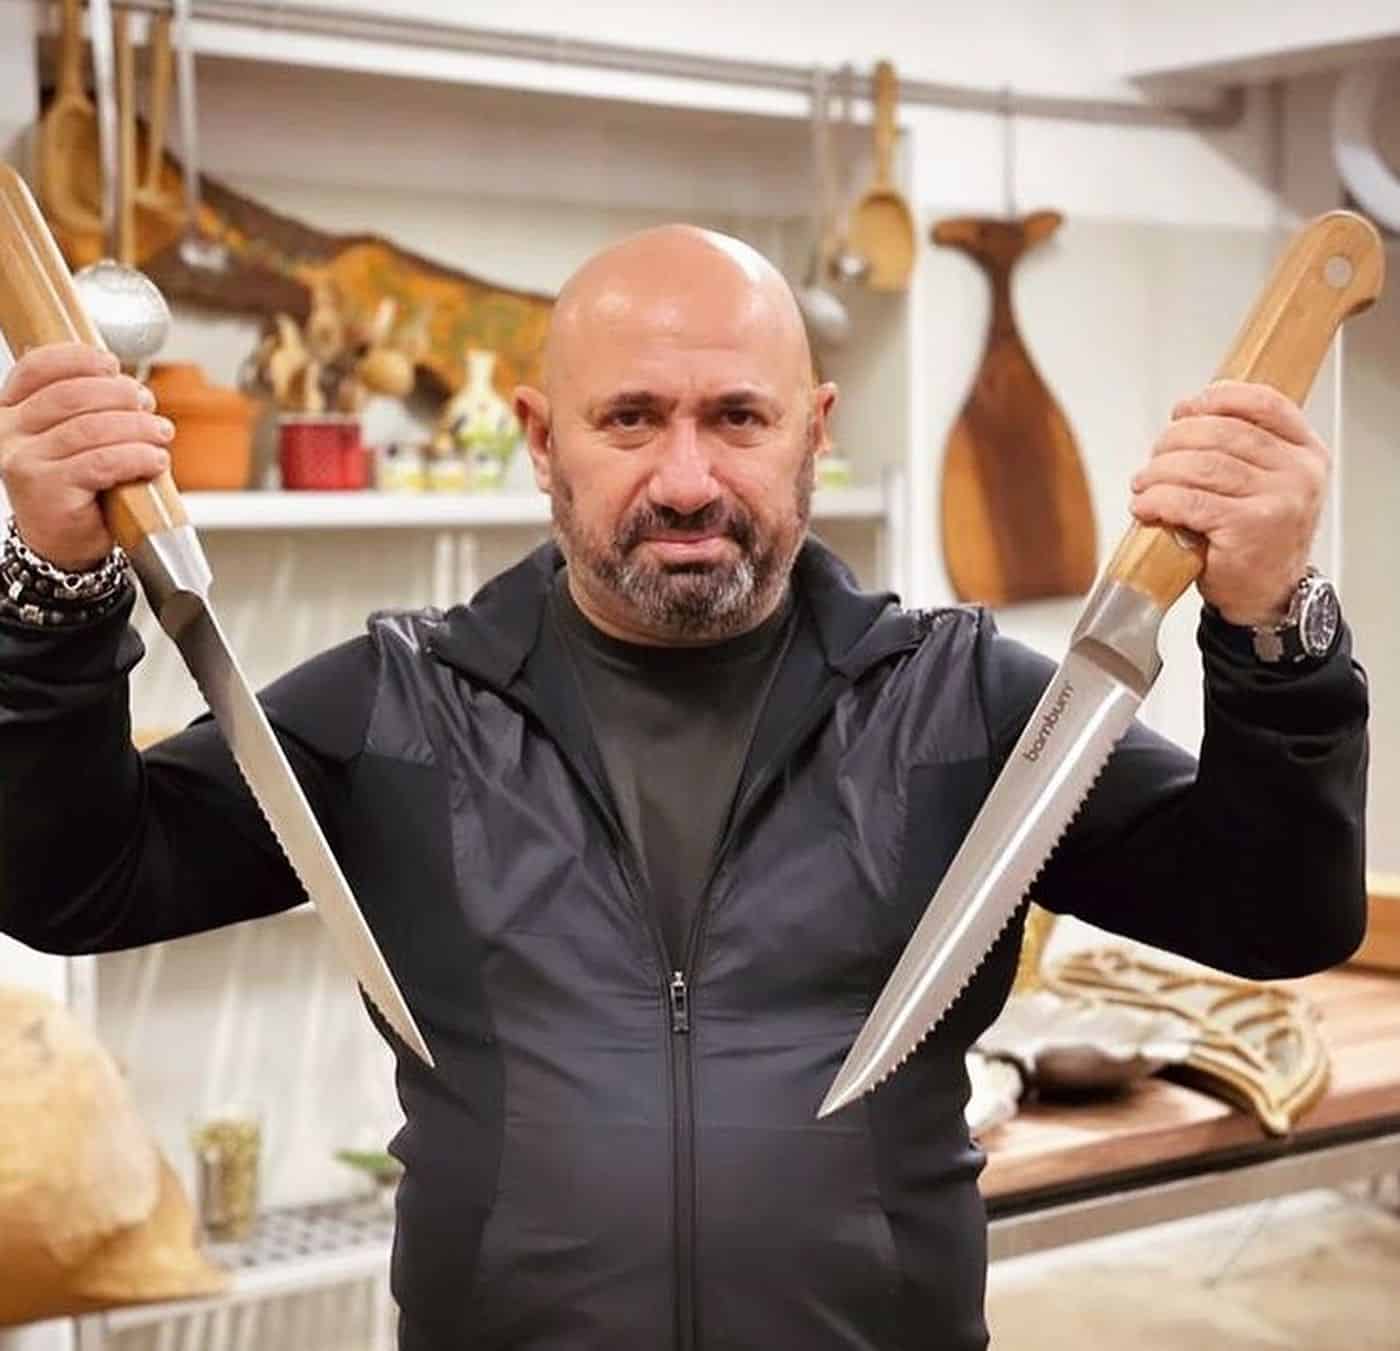 Câte clase are, de fapt, Cătălin Scărlătescu și cum a ajuns chef bucătar